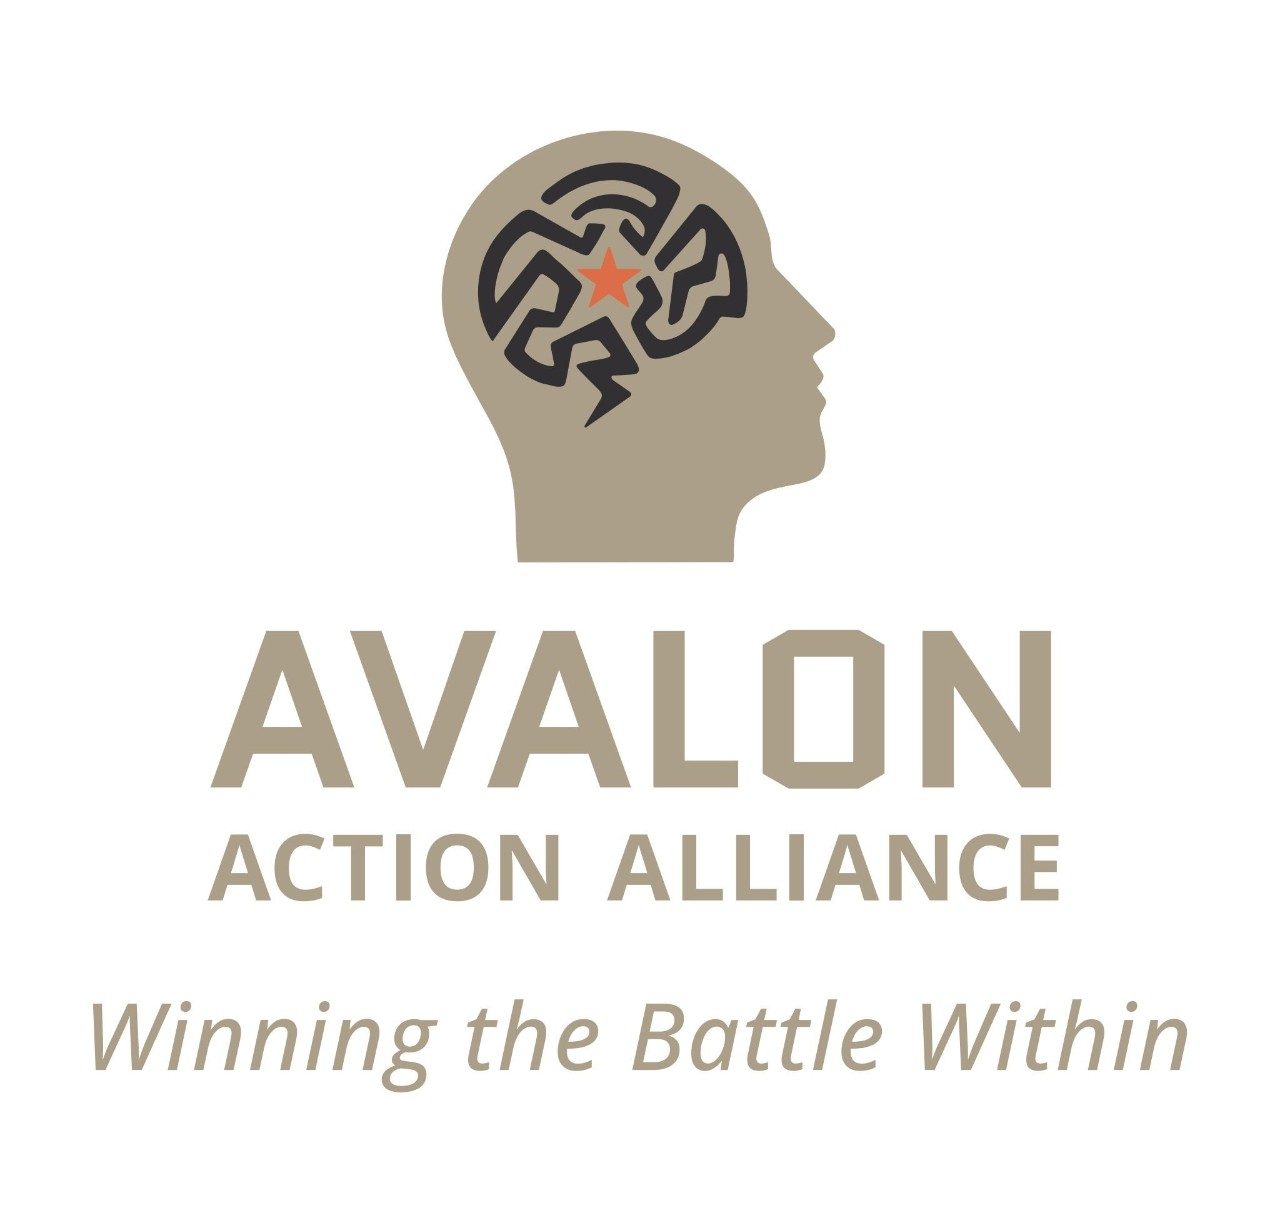 Avalon Action Alliance